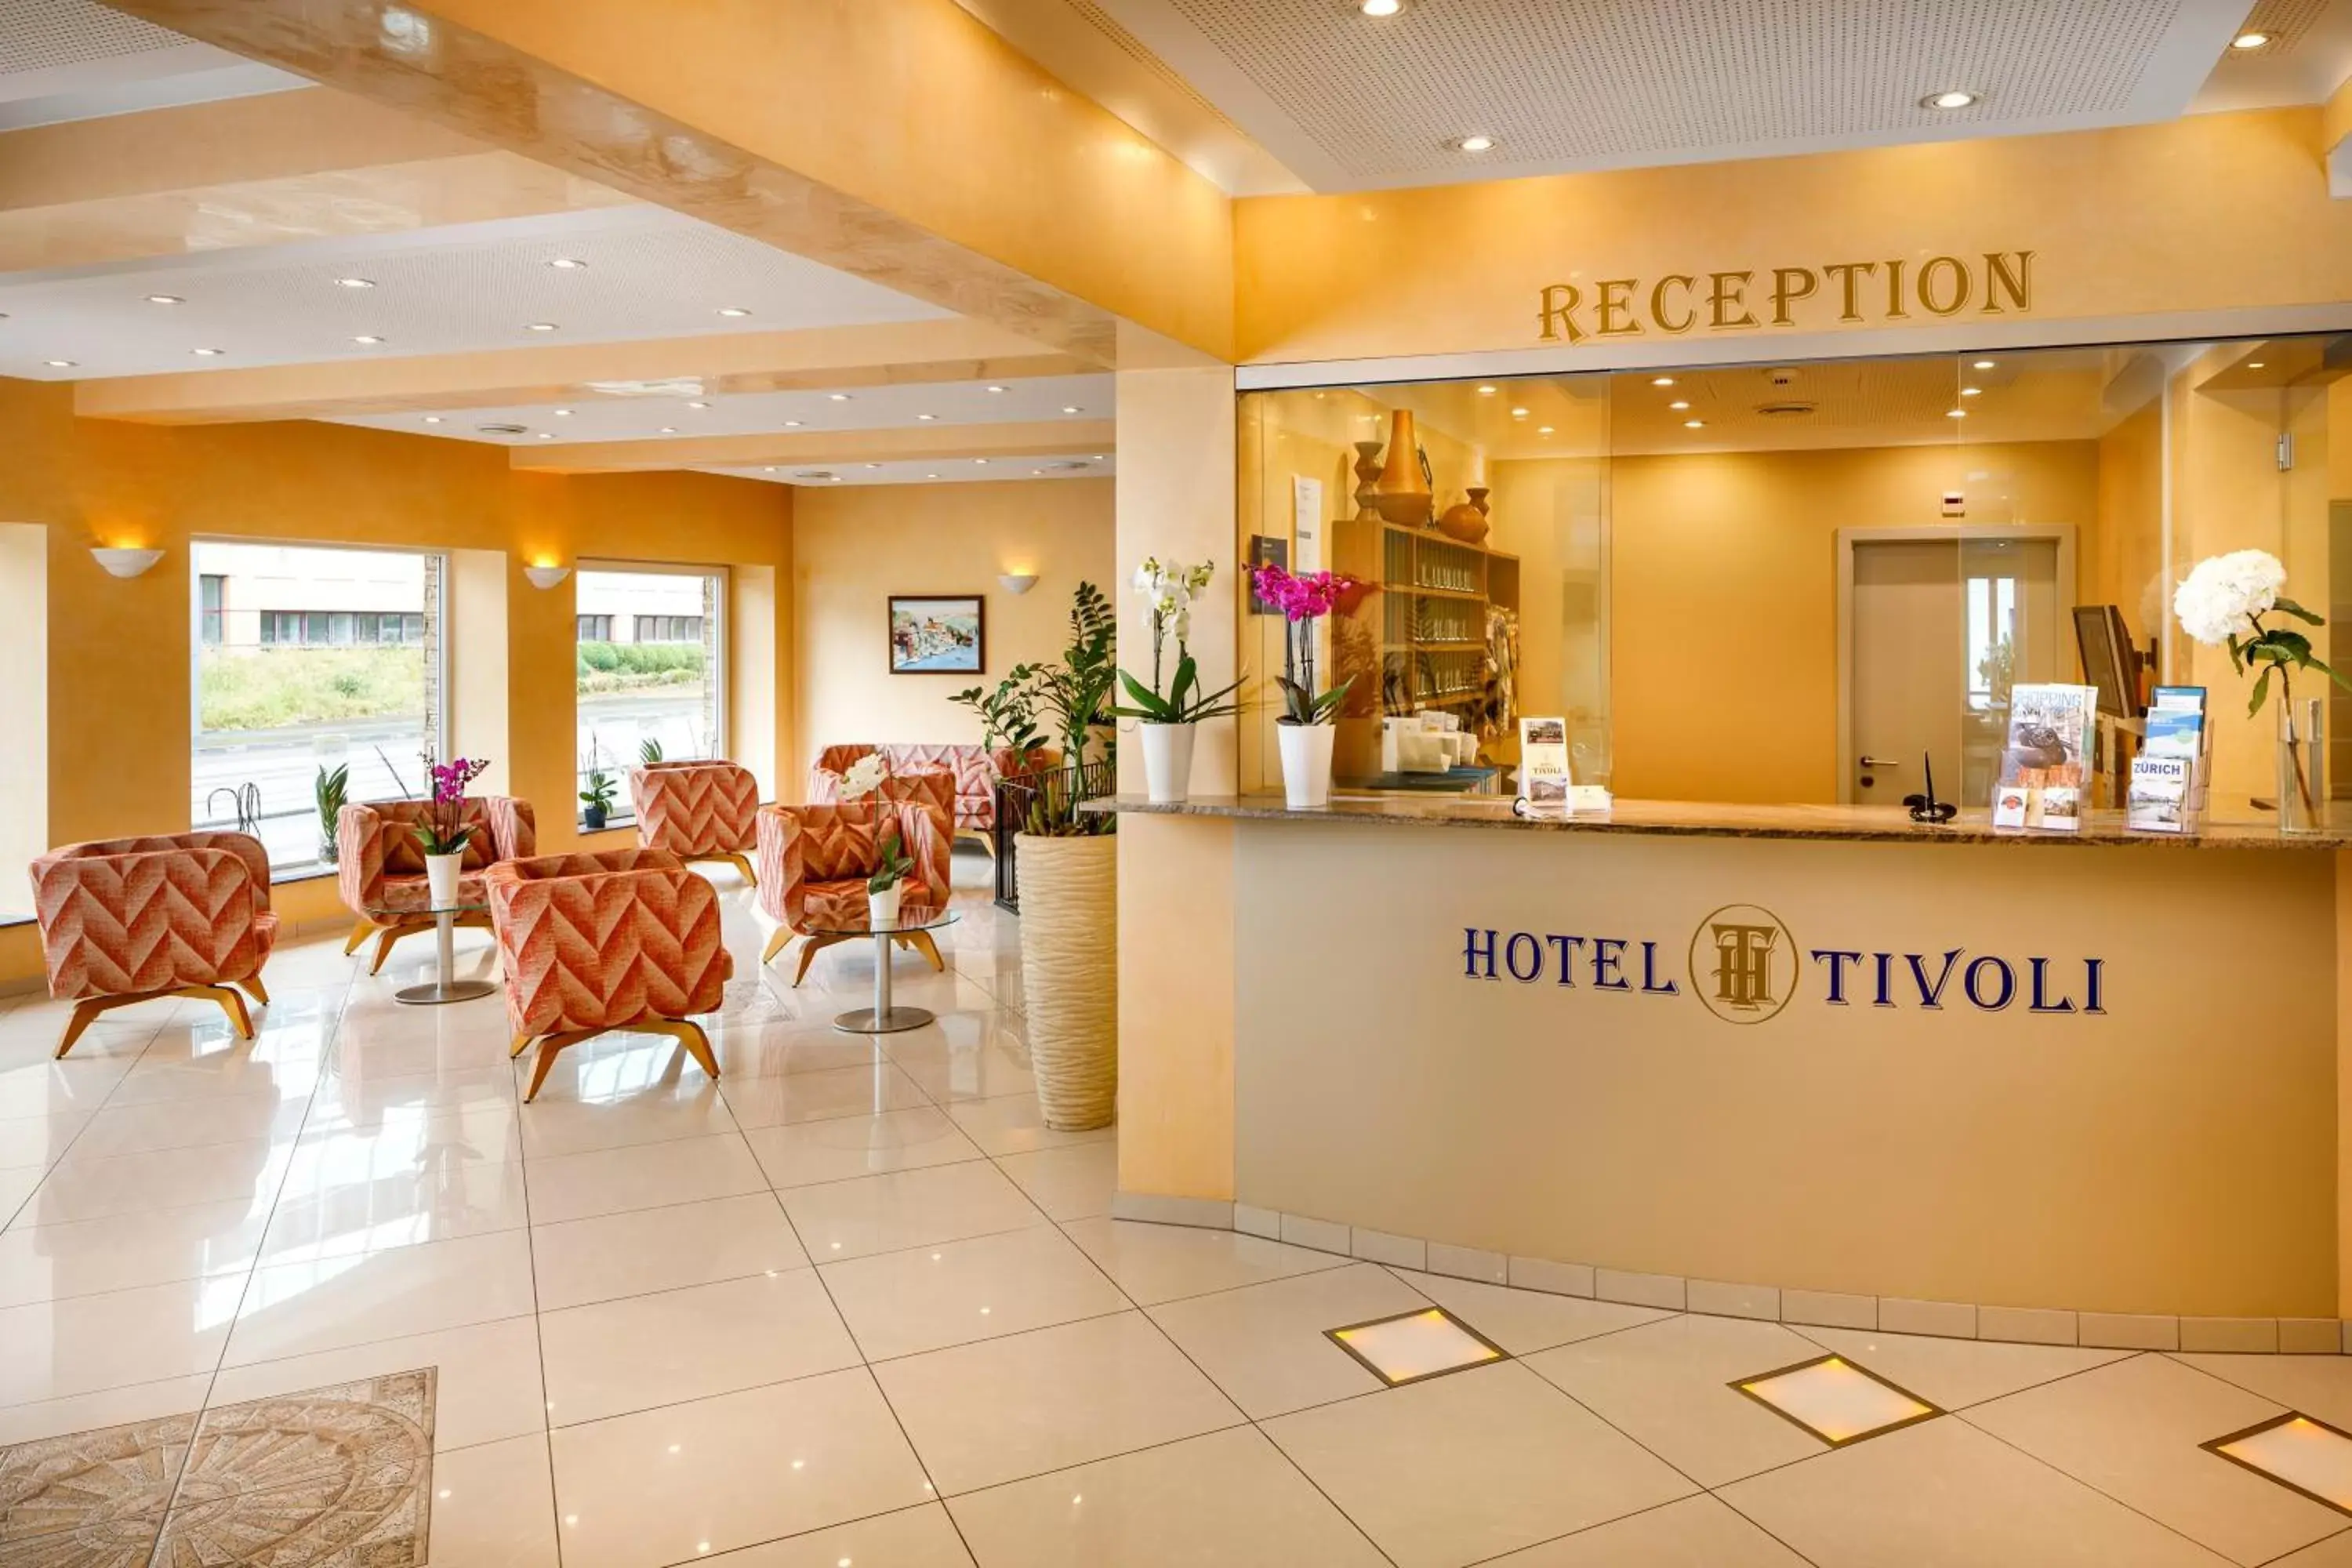 Lobby or reception in Hotel Tivoli